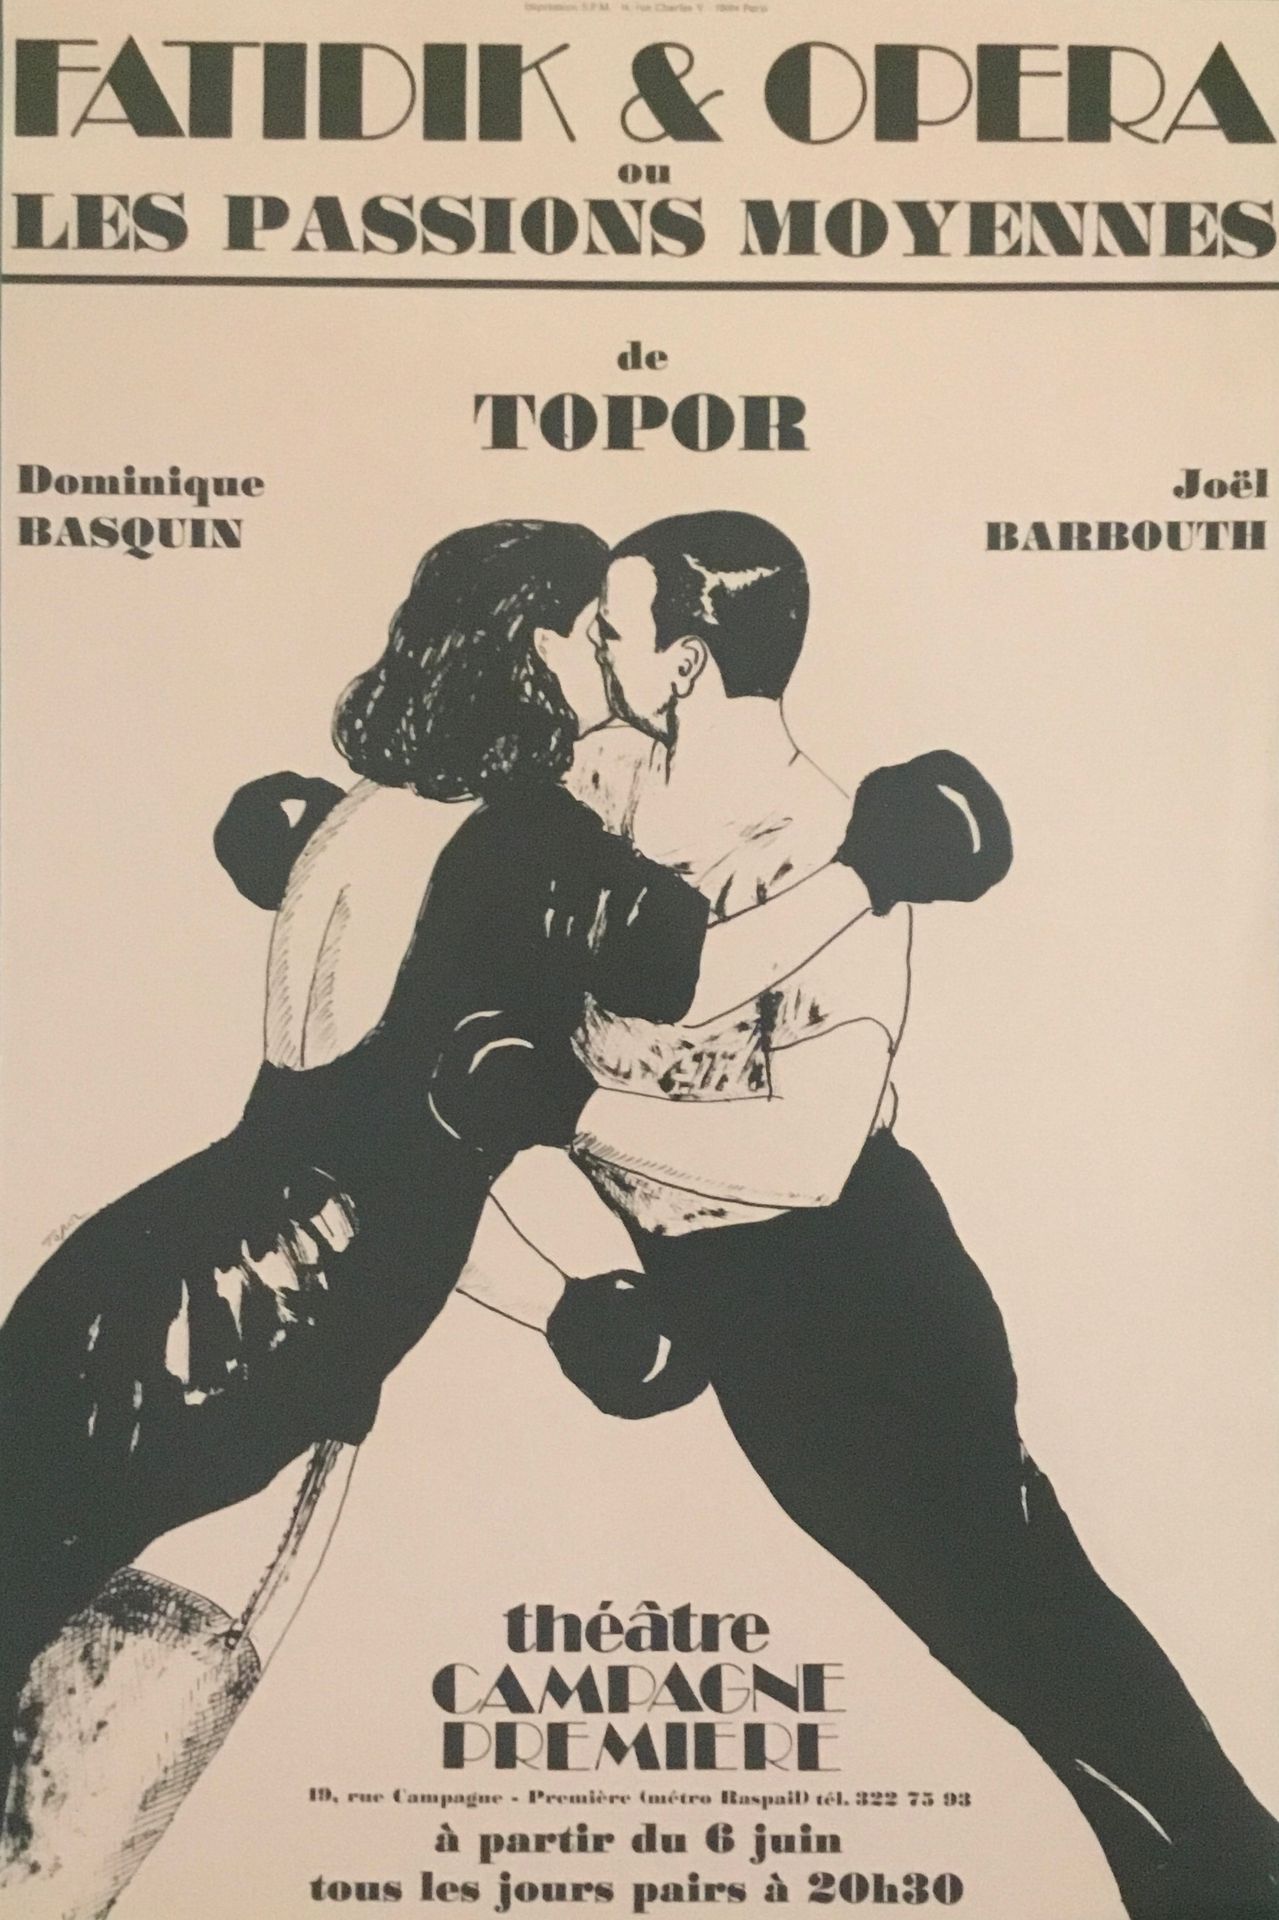 Null TOPOR Roland 

Plakat Offsset "Fatidique et Opéra" Théâtre campagne premièr&hellip;